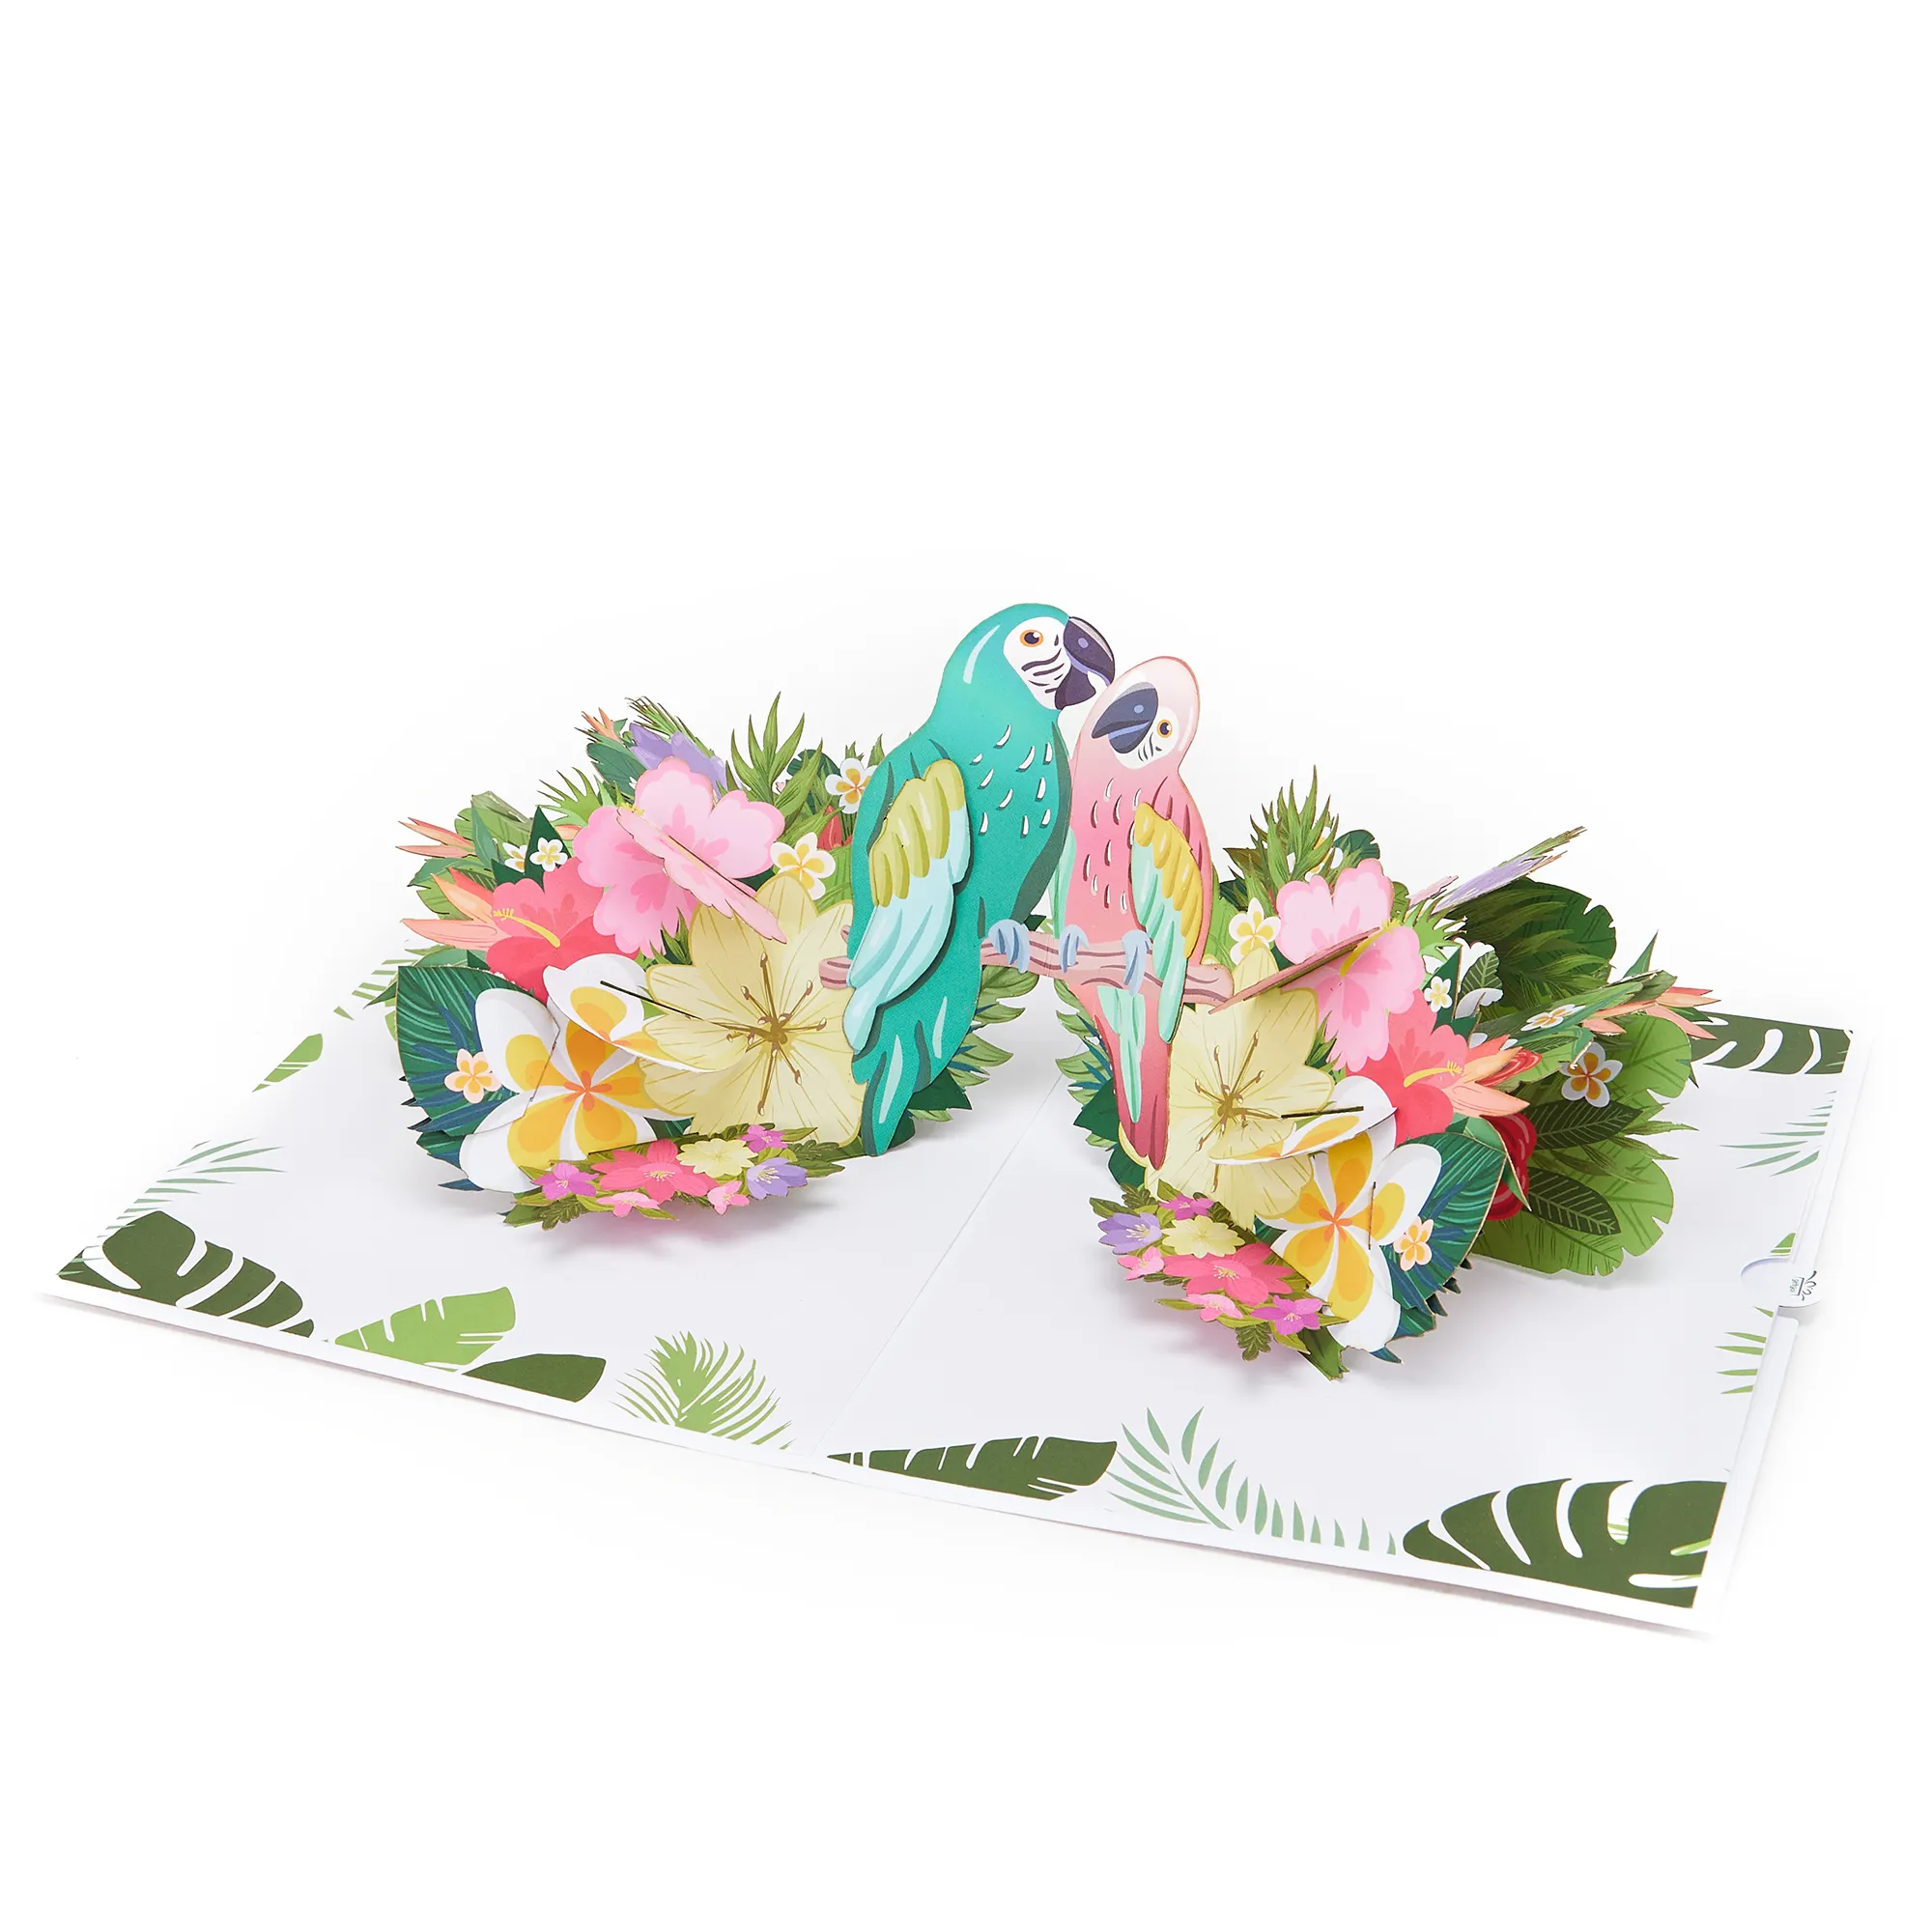 Hochwertige Papiers chnitt Love birds Blumen recyceln 3D-Karte Pop Up Floral Humming Birds Valentinstag Geschenk für Damen Männer Liebhaber LGBT